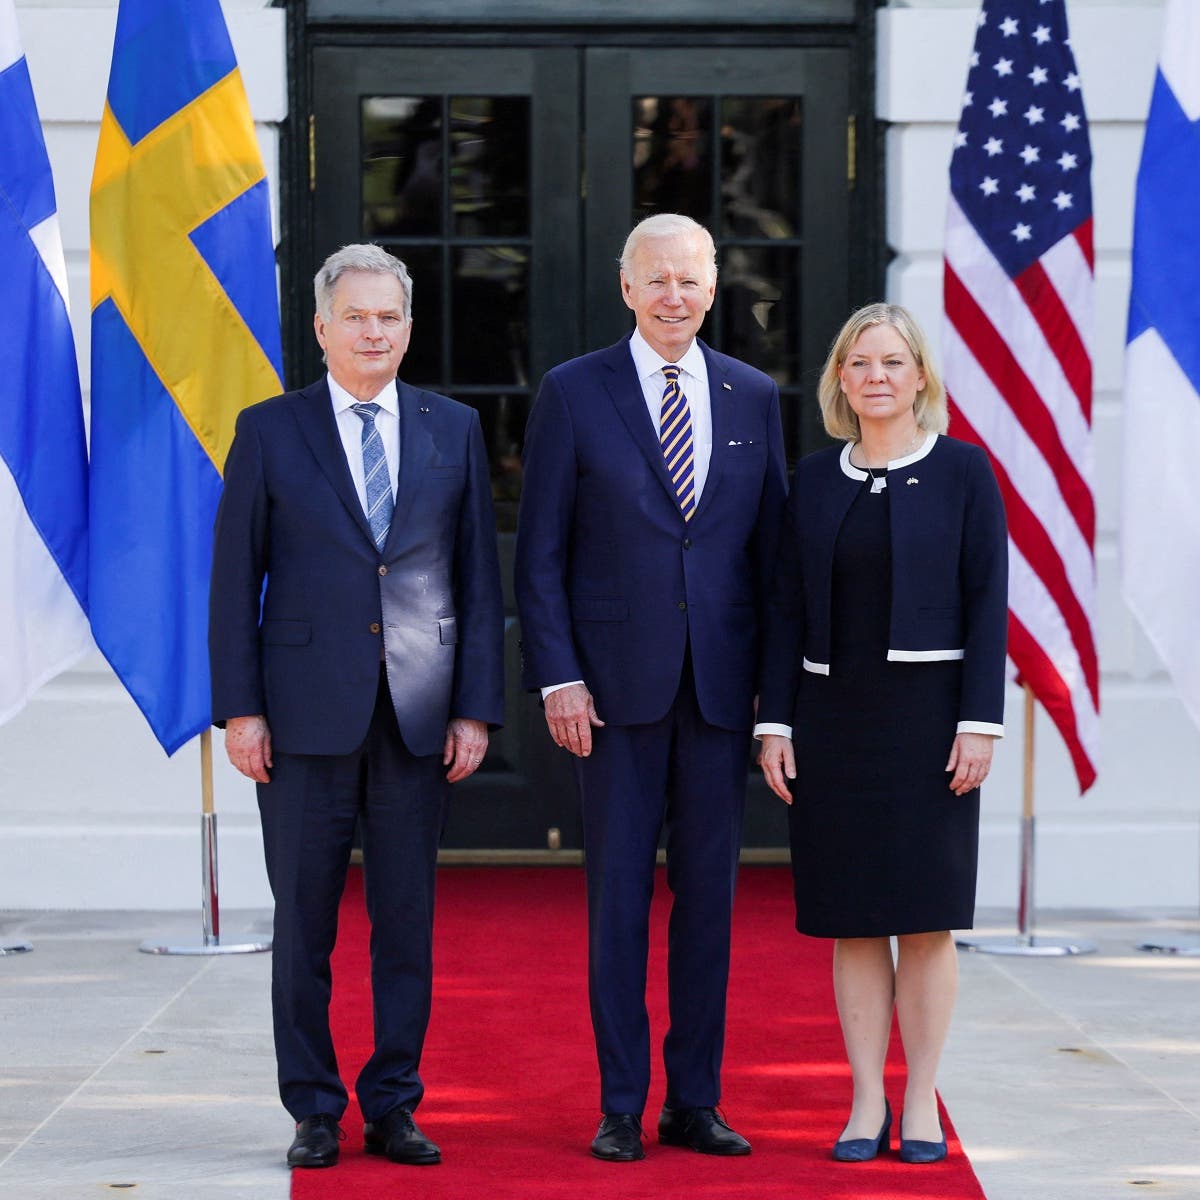 بايدن يلتقي زعيمي السويد وفنلندا ويدعم انضمام بلديهما للناتو